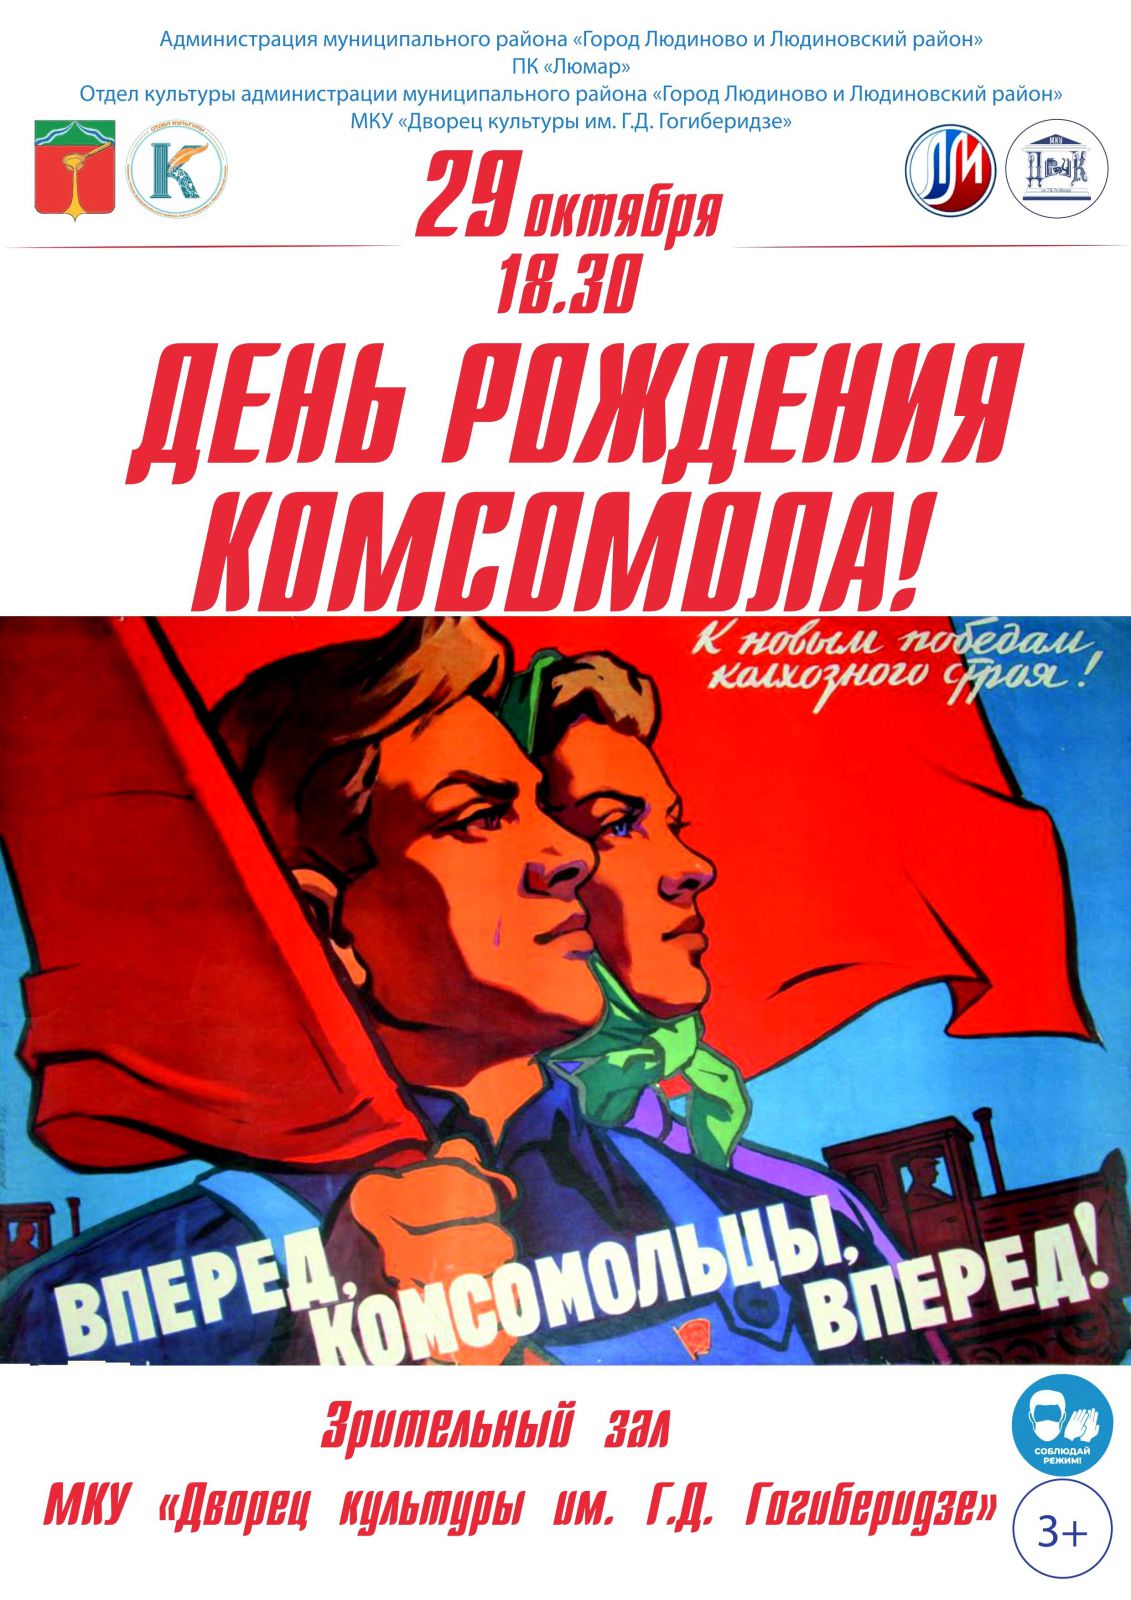 29 октября 1918 года – дата рождения самой массовой общественно-политической организации советской молодежи – комсомола